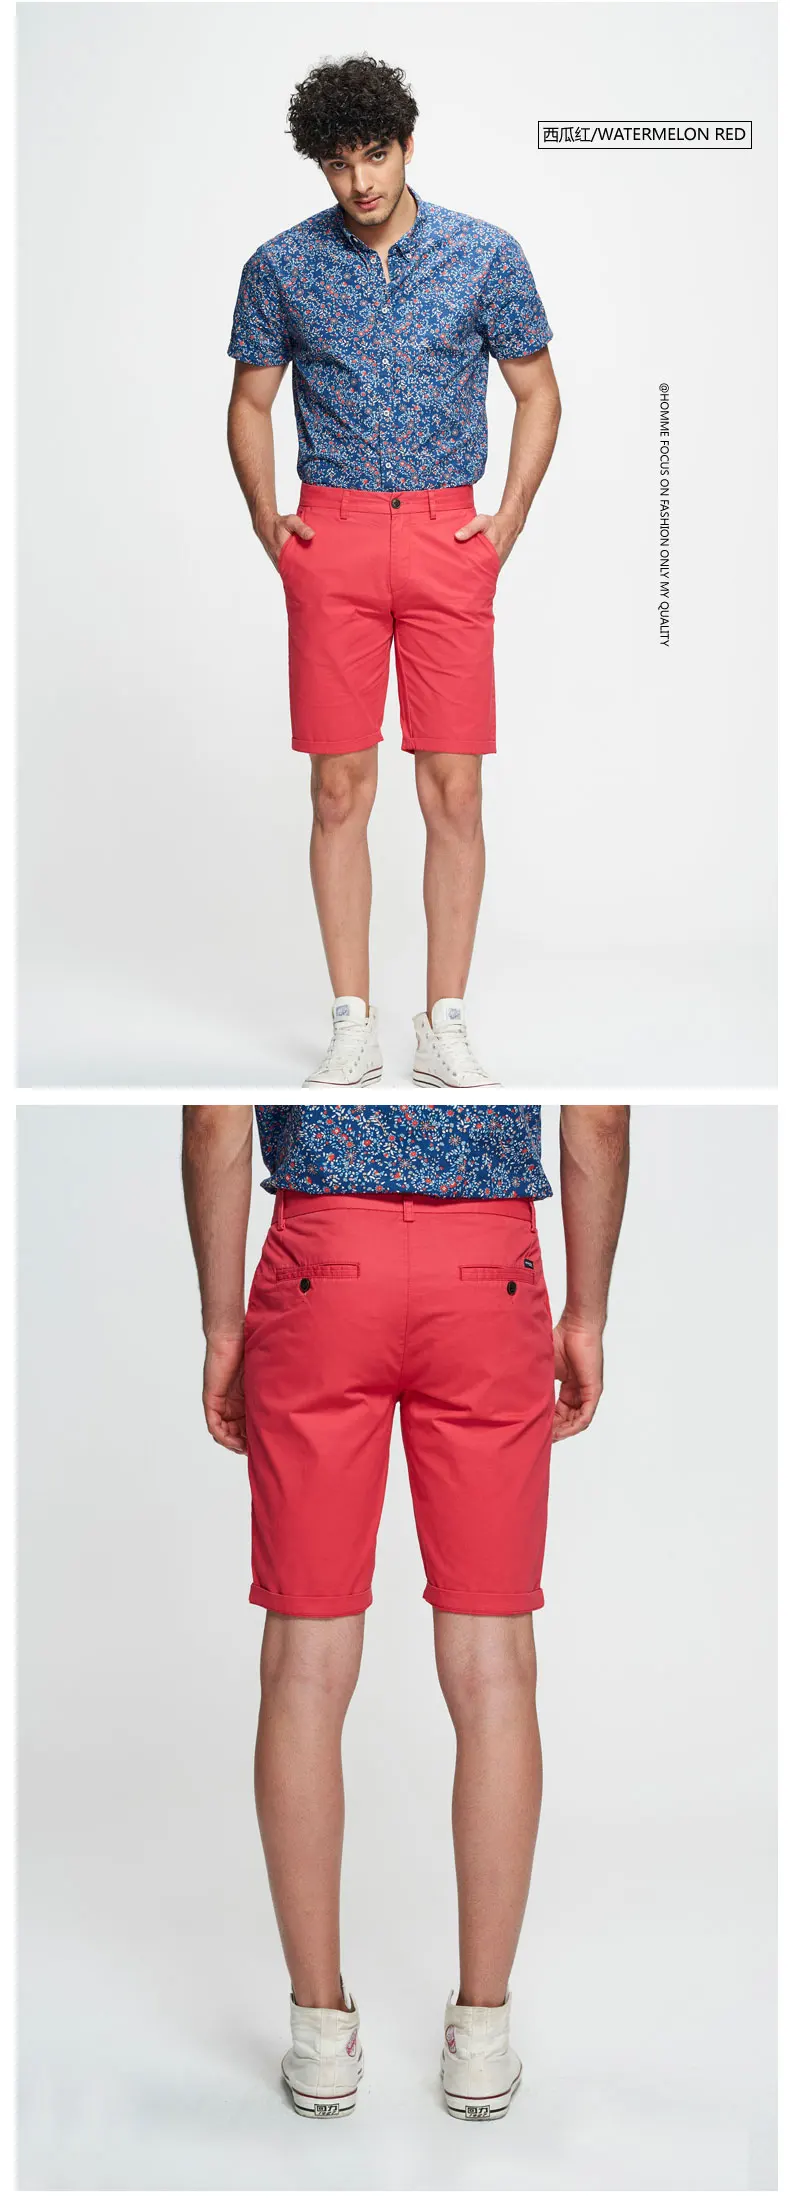 NXH 2019 Новый Мужские шорты кэжуал летние короткие штаны Хлопок Slim Fit по колено высокое качество, большие размеры Homme уличная 7 цветов